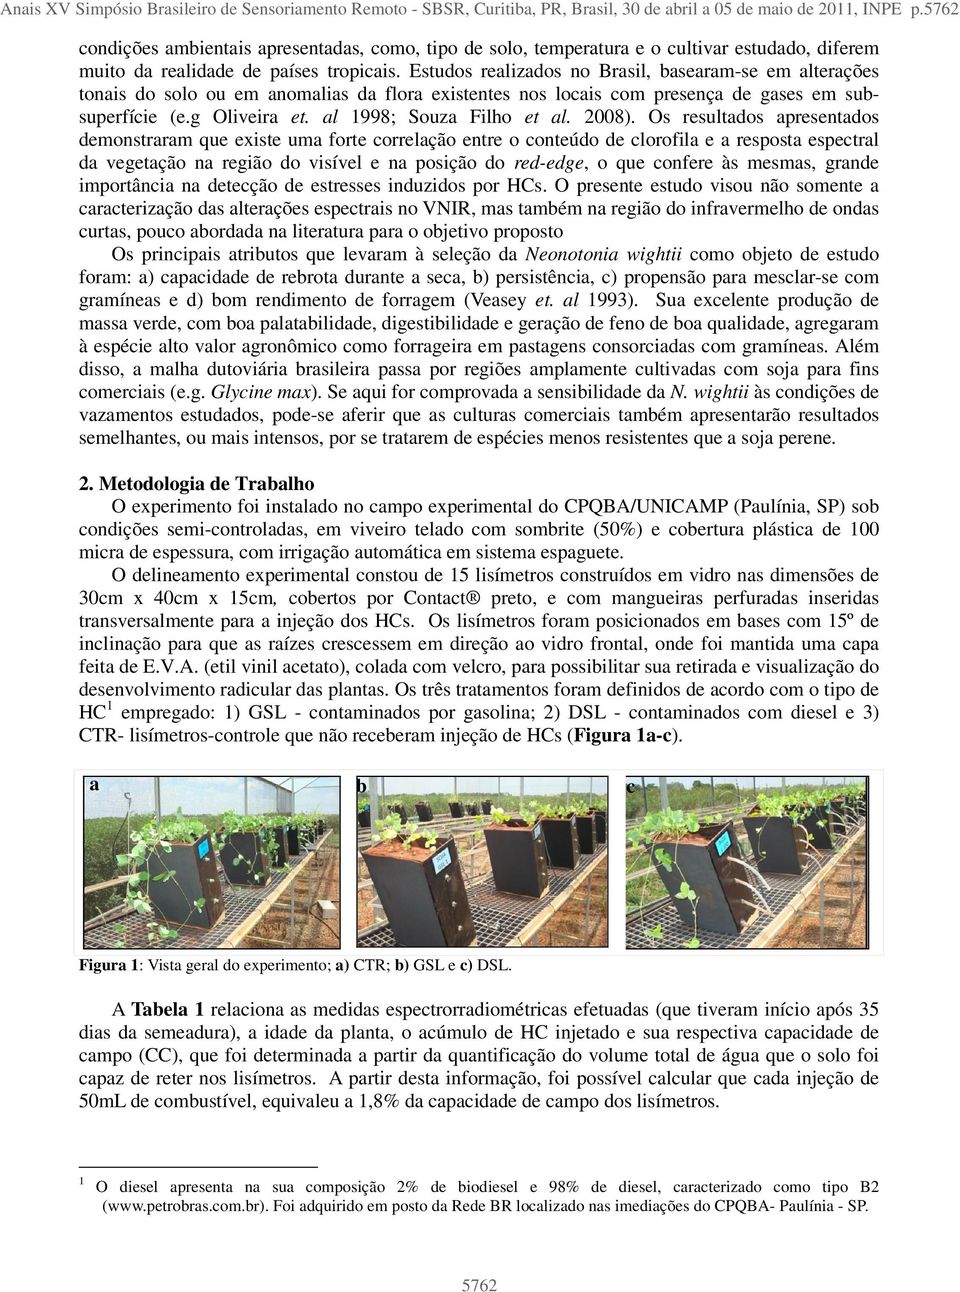 Estudos realizados no Brasil, basearam-se em alterações tonais do solo ou em anomalias da flora existentes nos locais com presença de gases em subsuperfície (e.g Oliveira et.